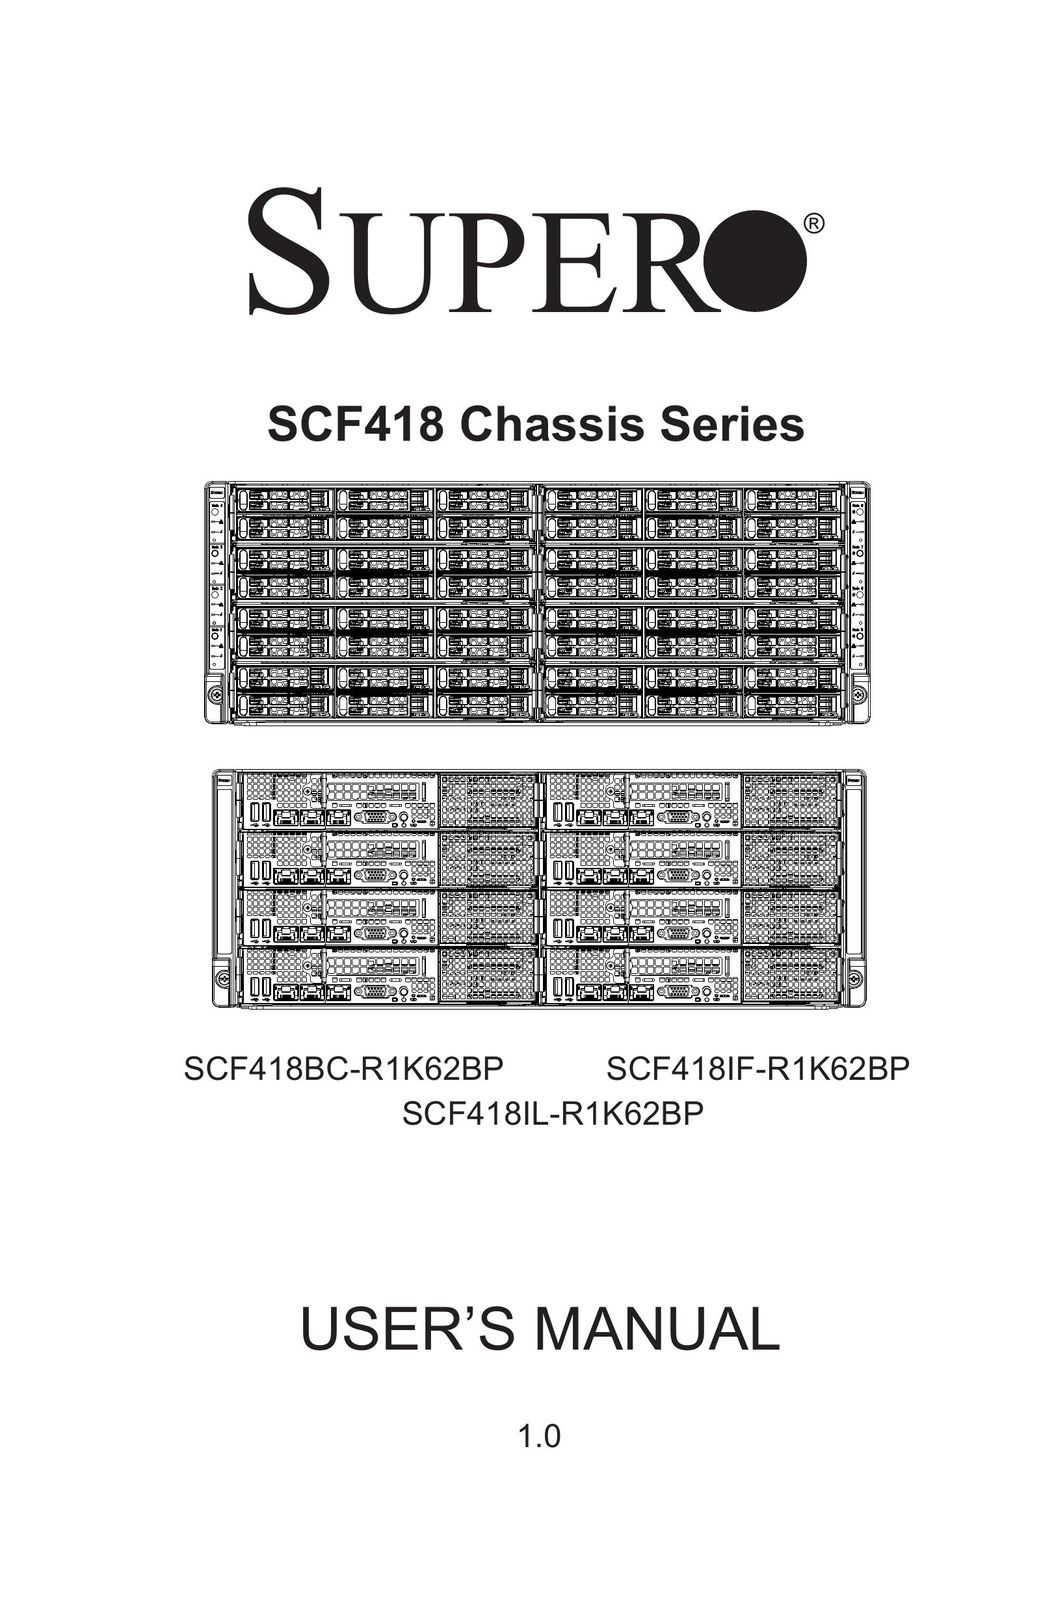 SUPER MICRO Computer SCF418IF-R1K62BP Computer Hardware User Manual